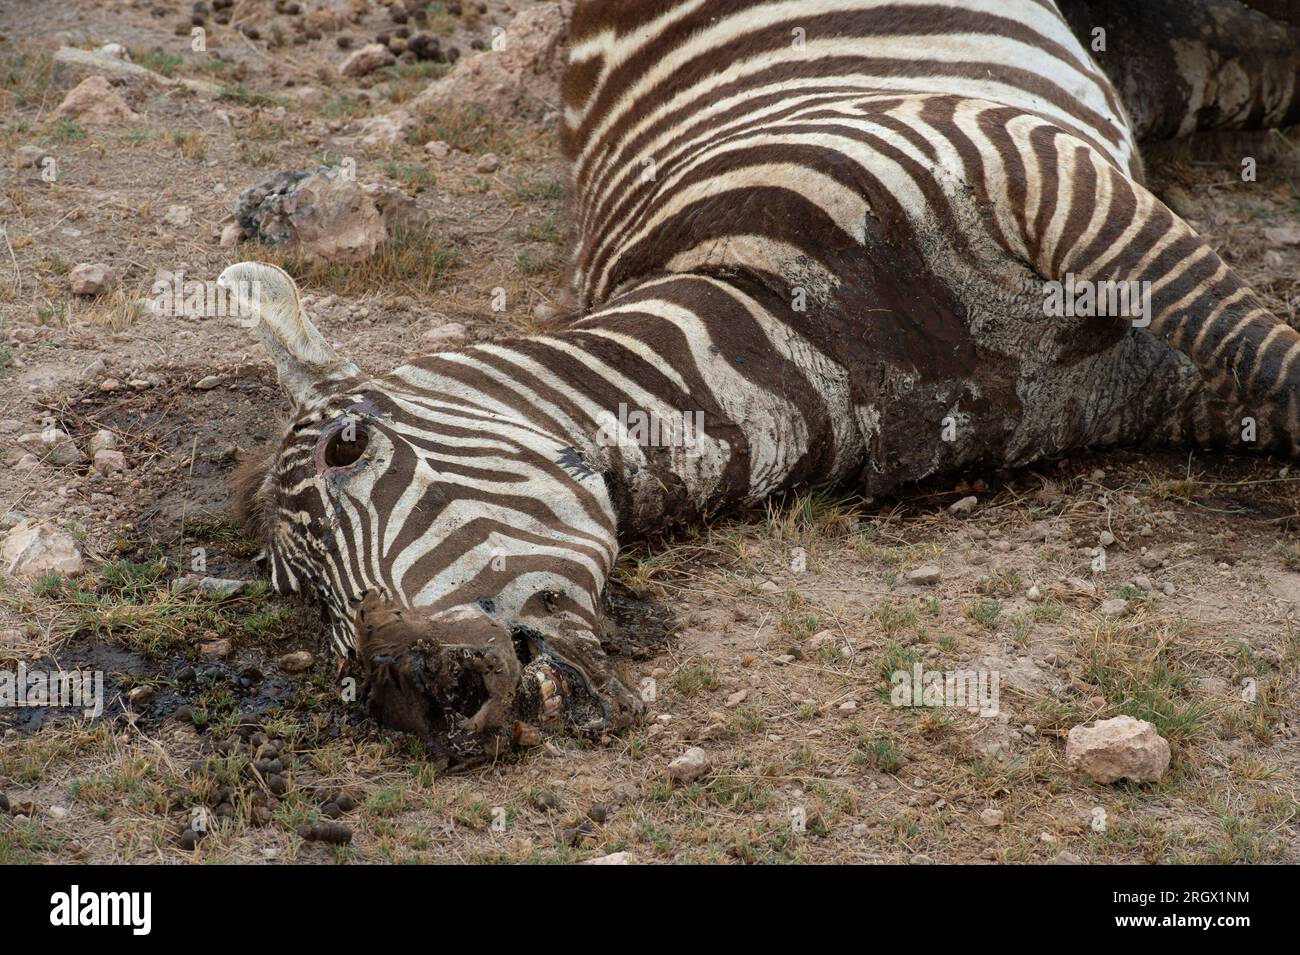 Le zèbre de Dead Grant pour la sécheresse due au changement climatique, Equus quagga boehmi, équidés, Parc National d'Amboseli, Kenya, Afrique Banque D'Images